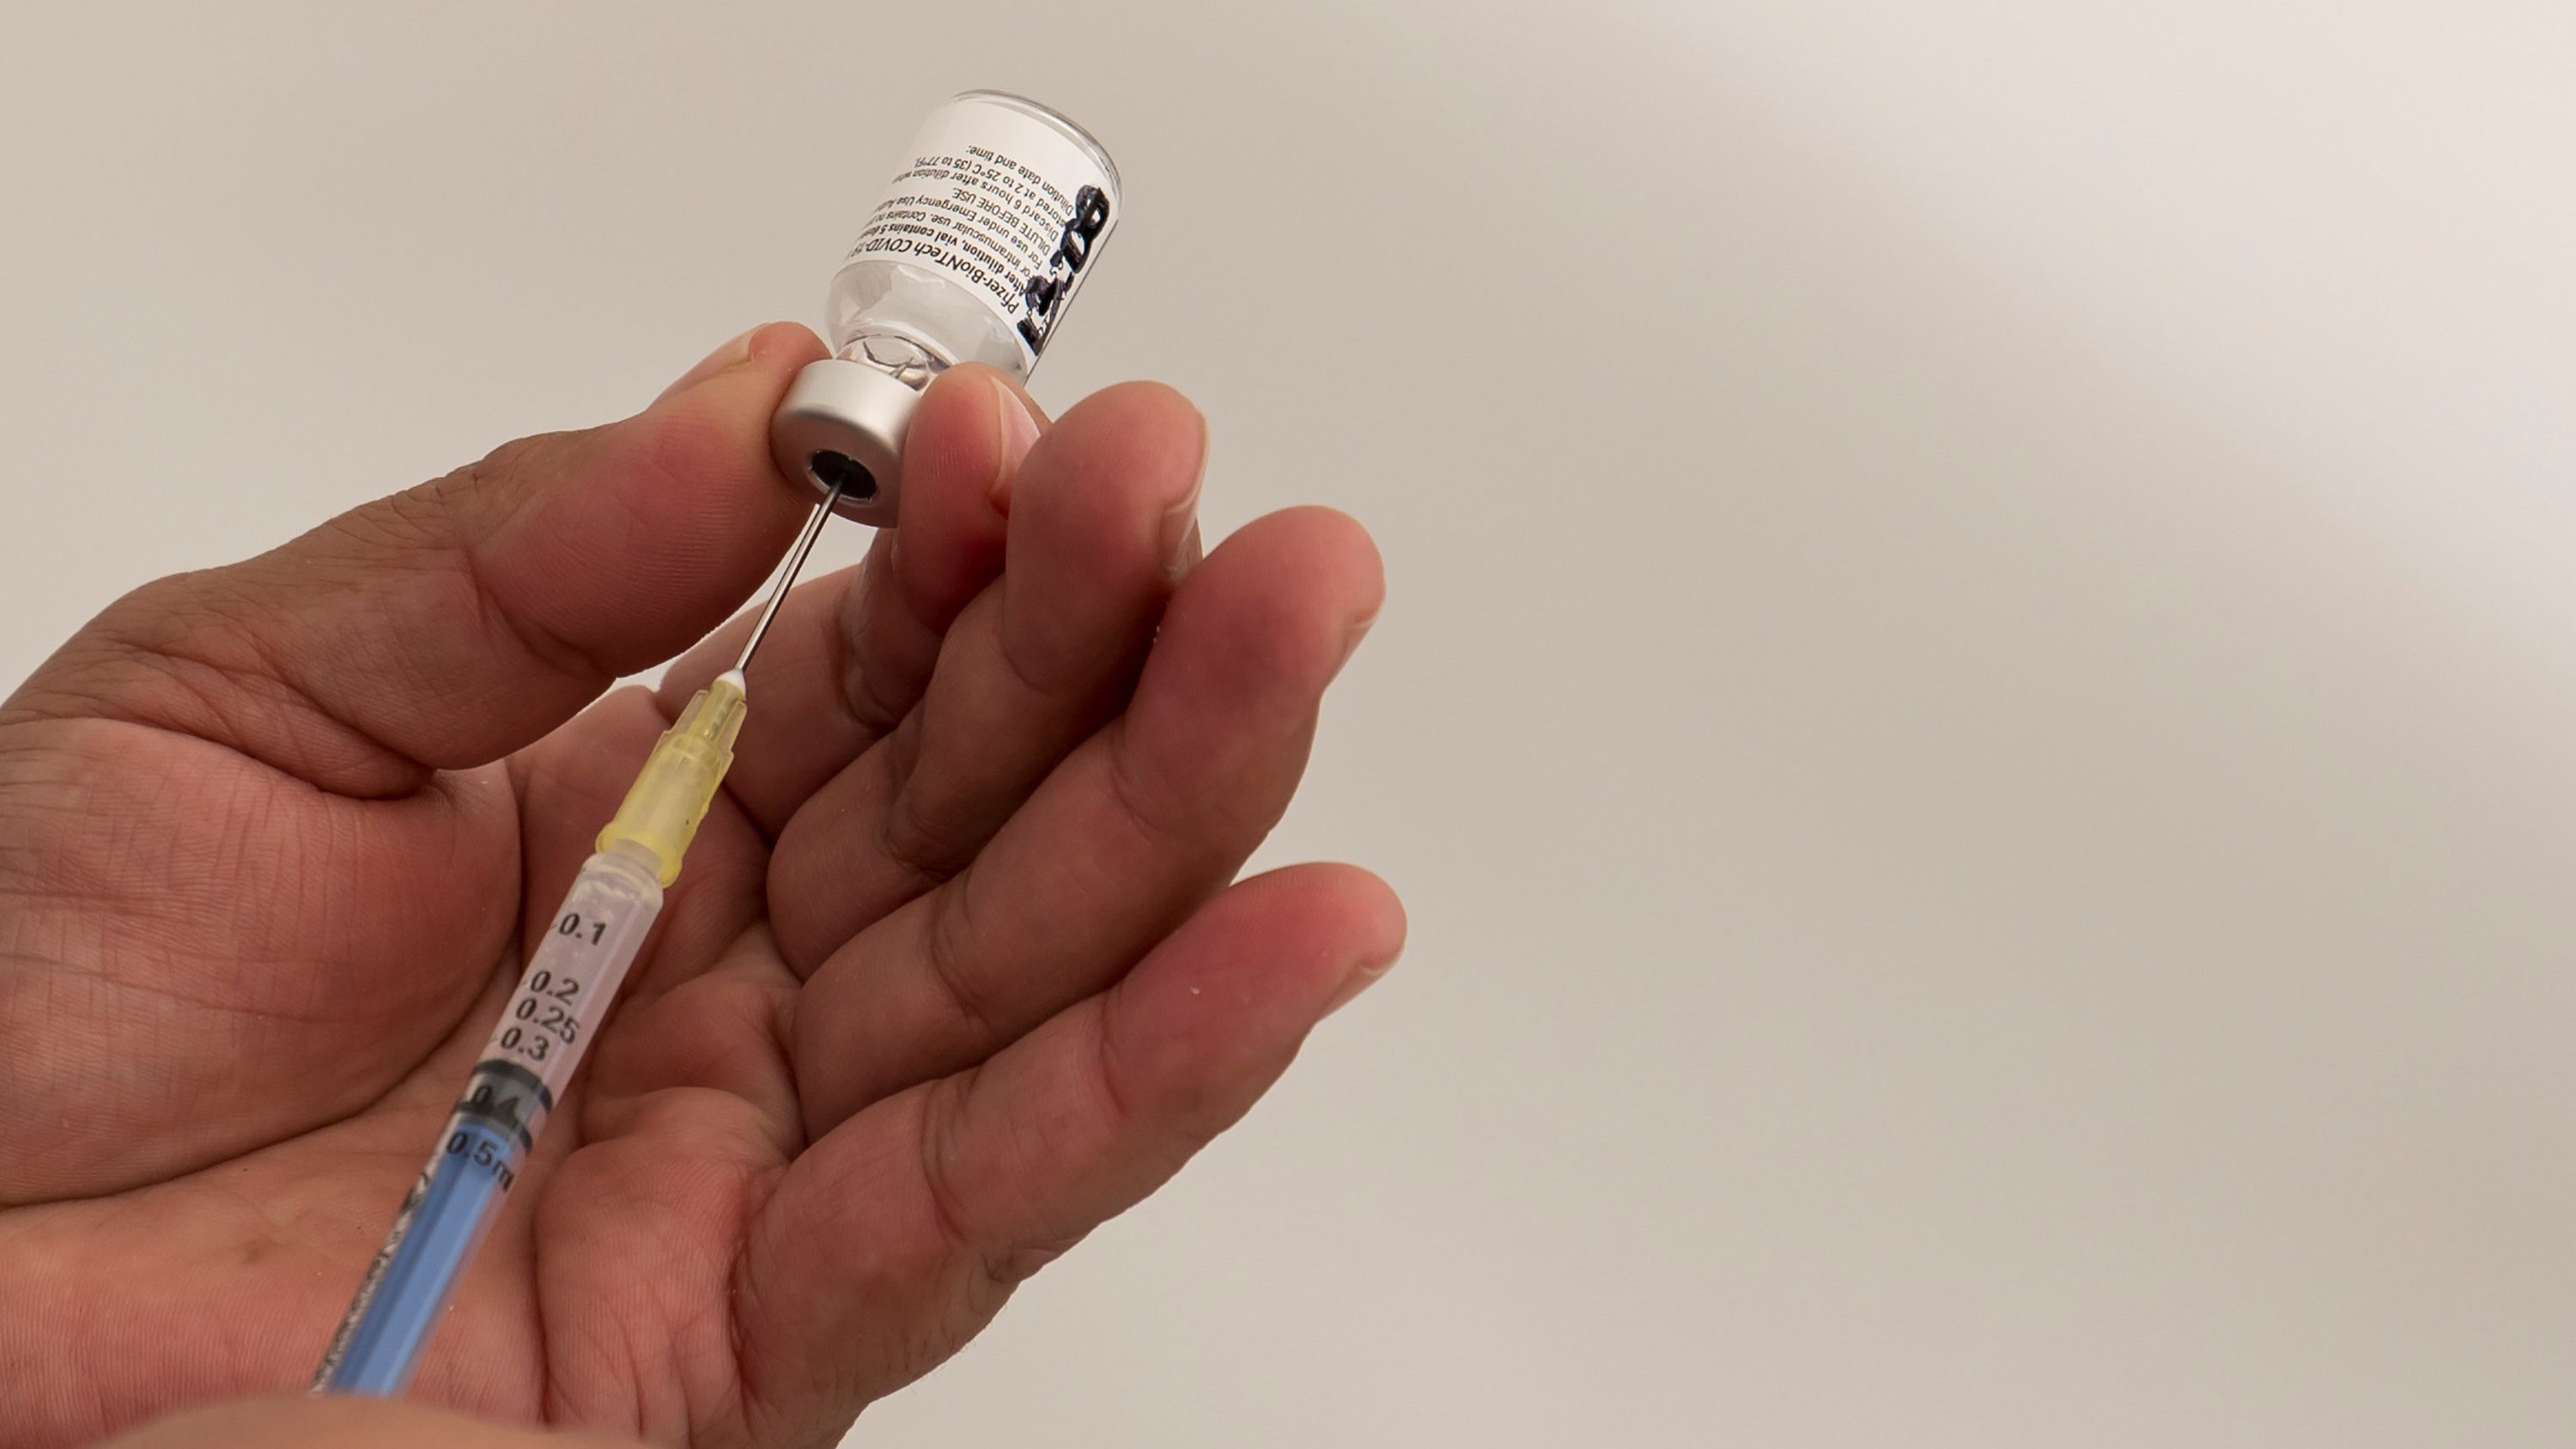 Német lapértesülés: 65 év felettieknél hatástalan az Oxfordi Egyetem vakcinája